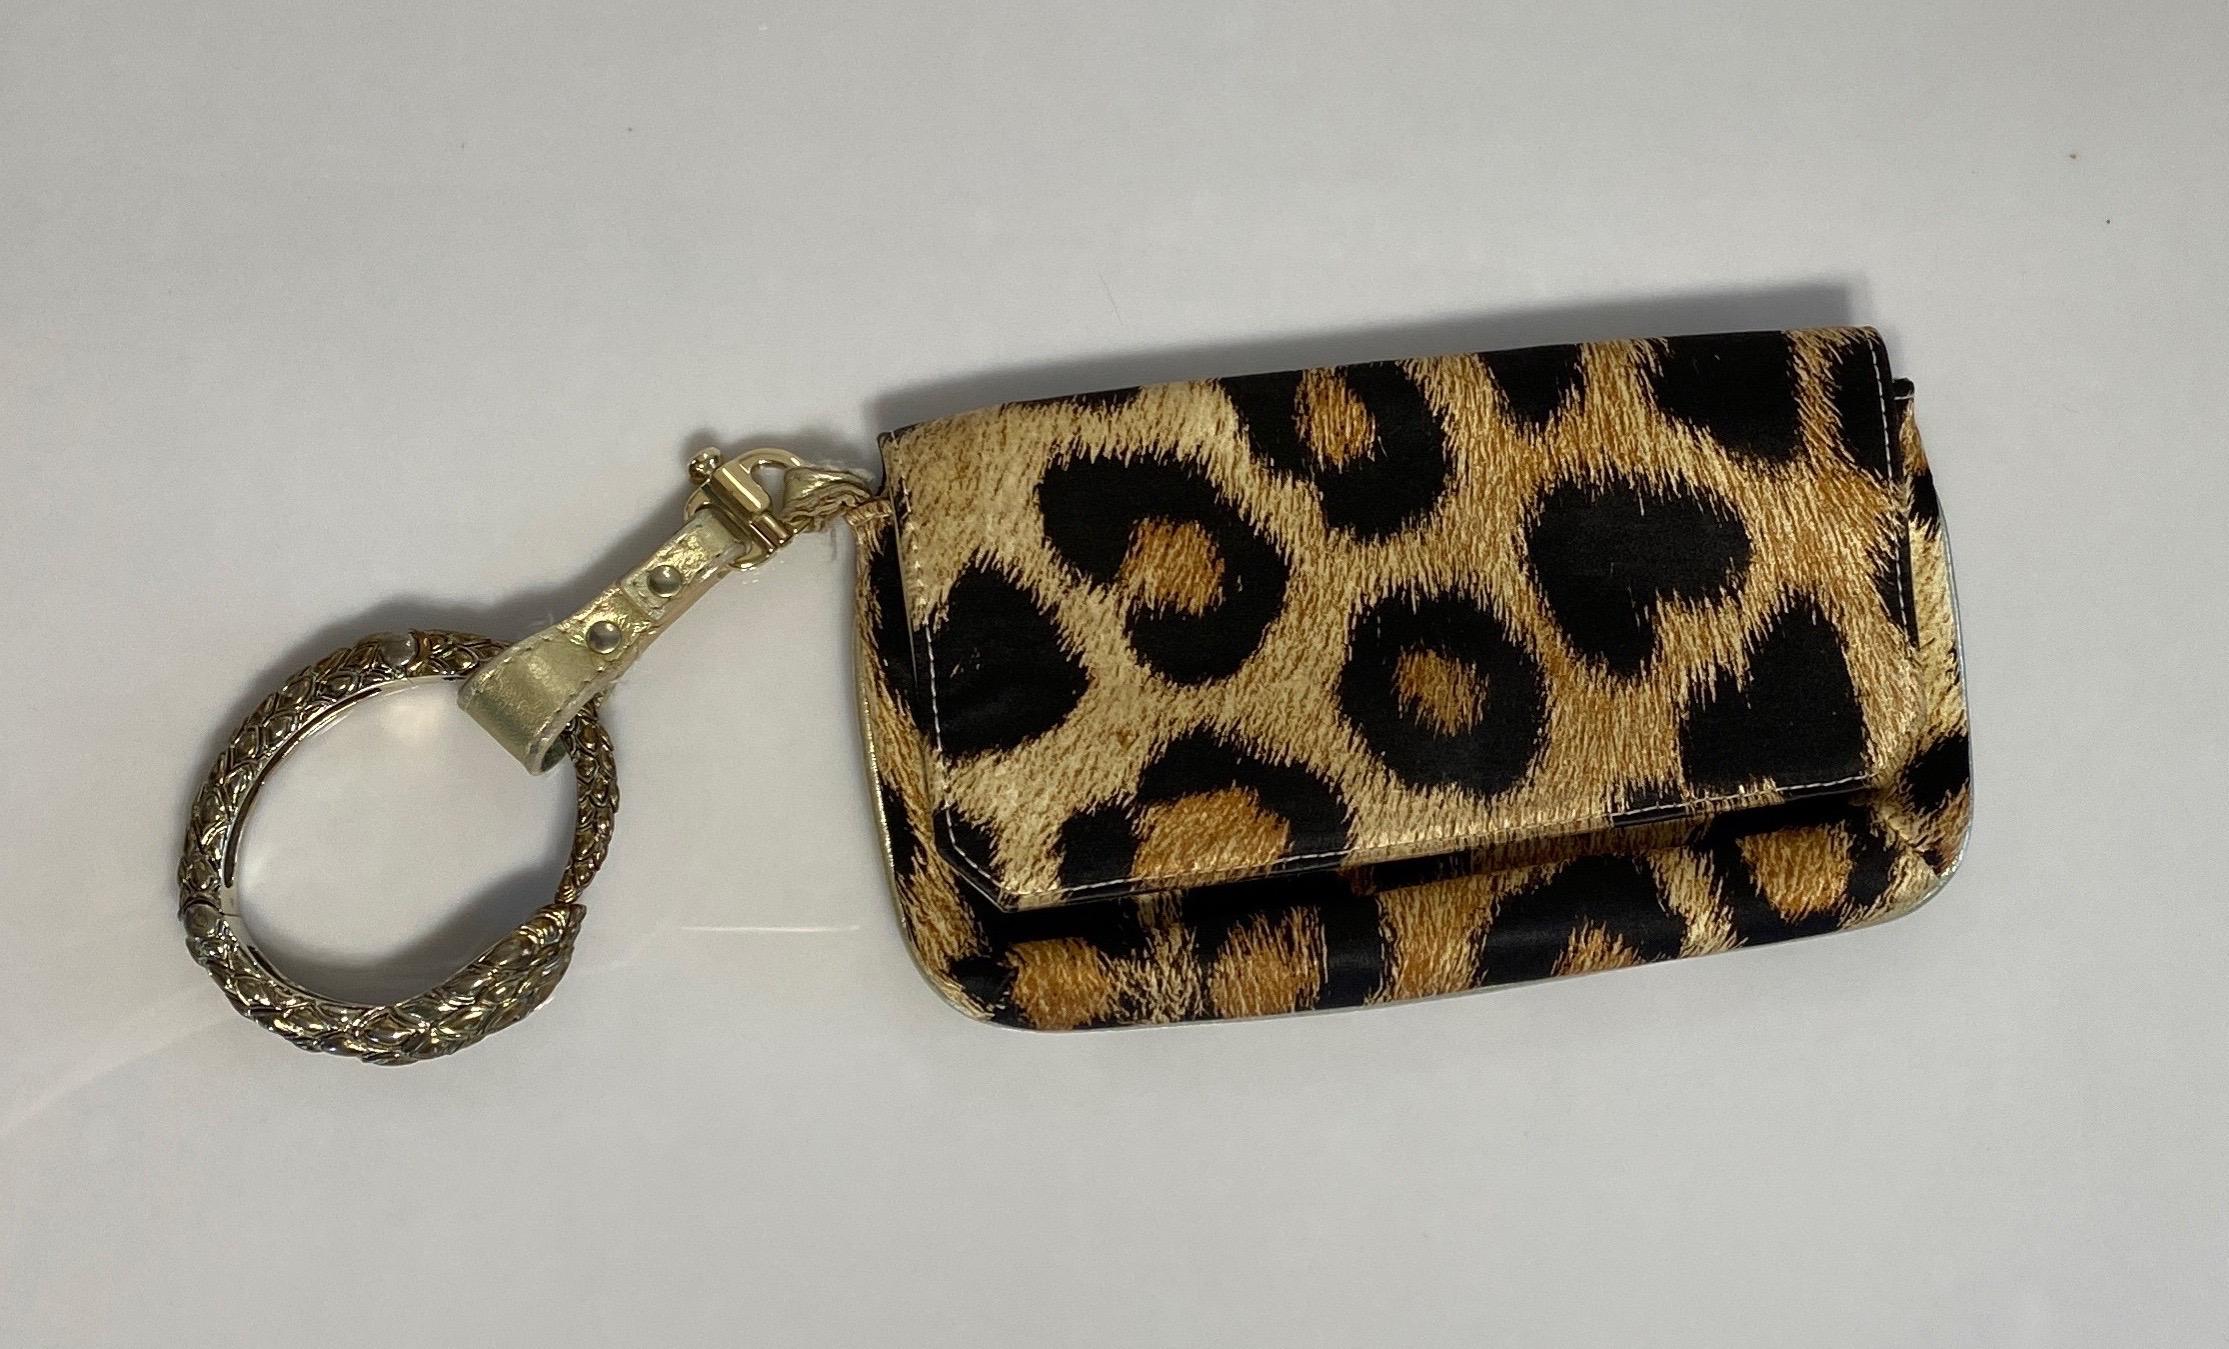 Die Roberto Cavalli Leopard Silk Print Bracelet Bag ist eine goldene und braune Clutch-Tasche mit Leoparden-Seidenmuster, goldenen Lederpaspeln und einem abnehmbaren gold/bronzenen Schlangenarmband als Griff. Der abnehmbare Griff hat eine goldene